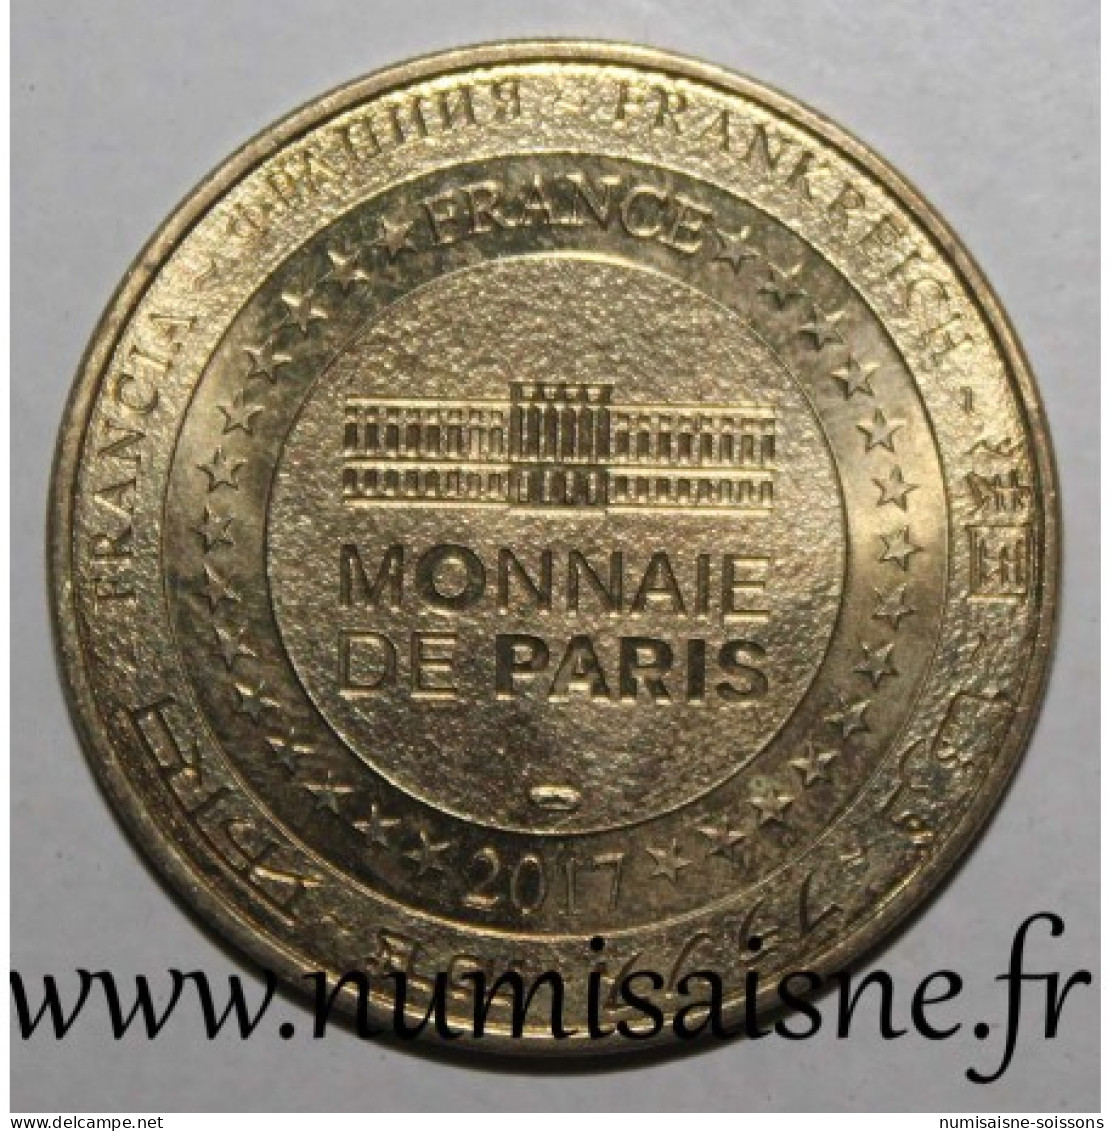 35 - SAINT MALO - GRAND AQUARIUM - POULPE - Monnaie De Paris - 2017 - Undated